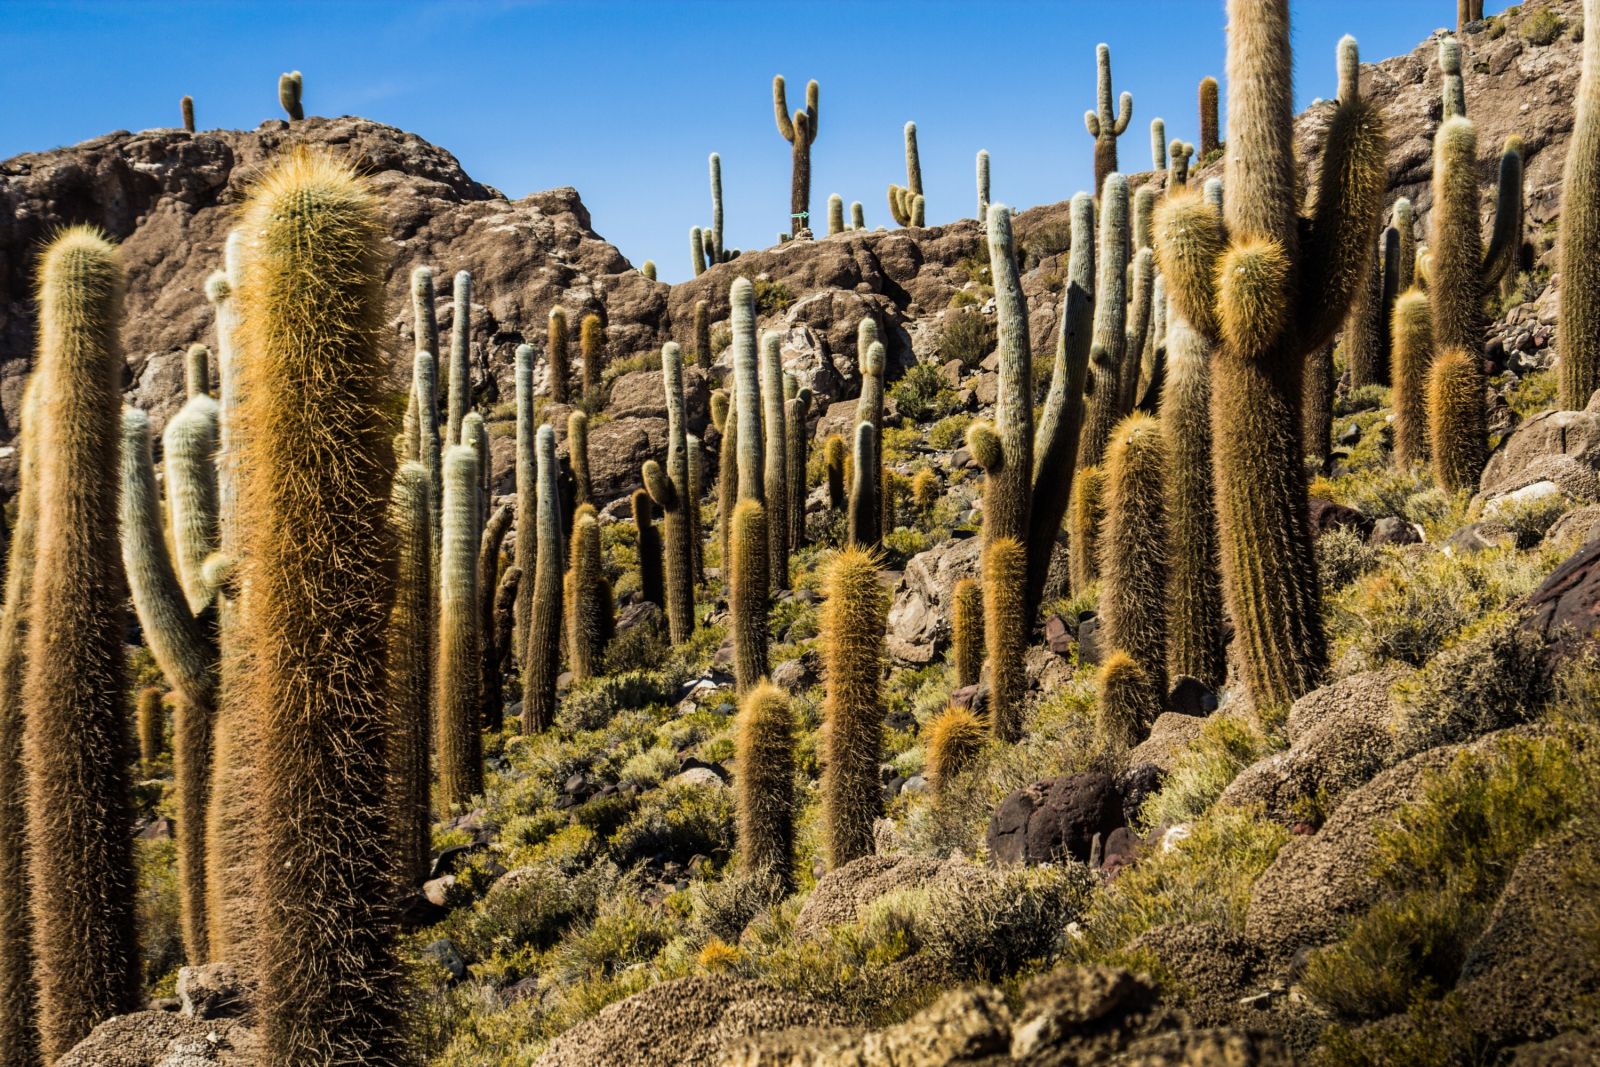 Kakteenwald auf der Insel Incahuasi in der Atacama-Wüste